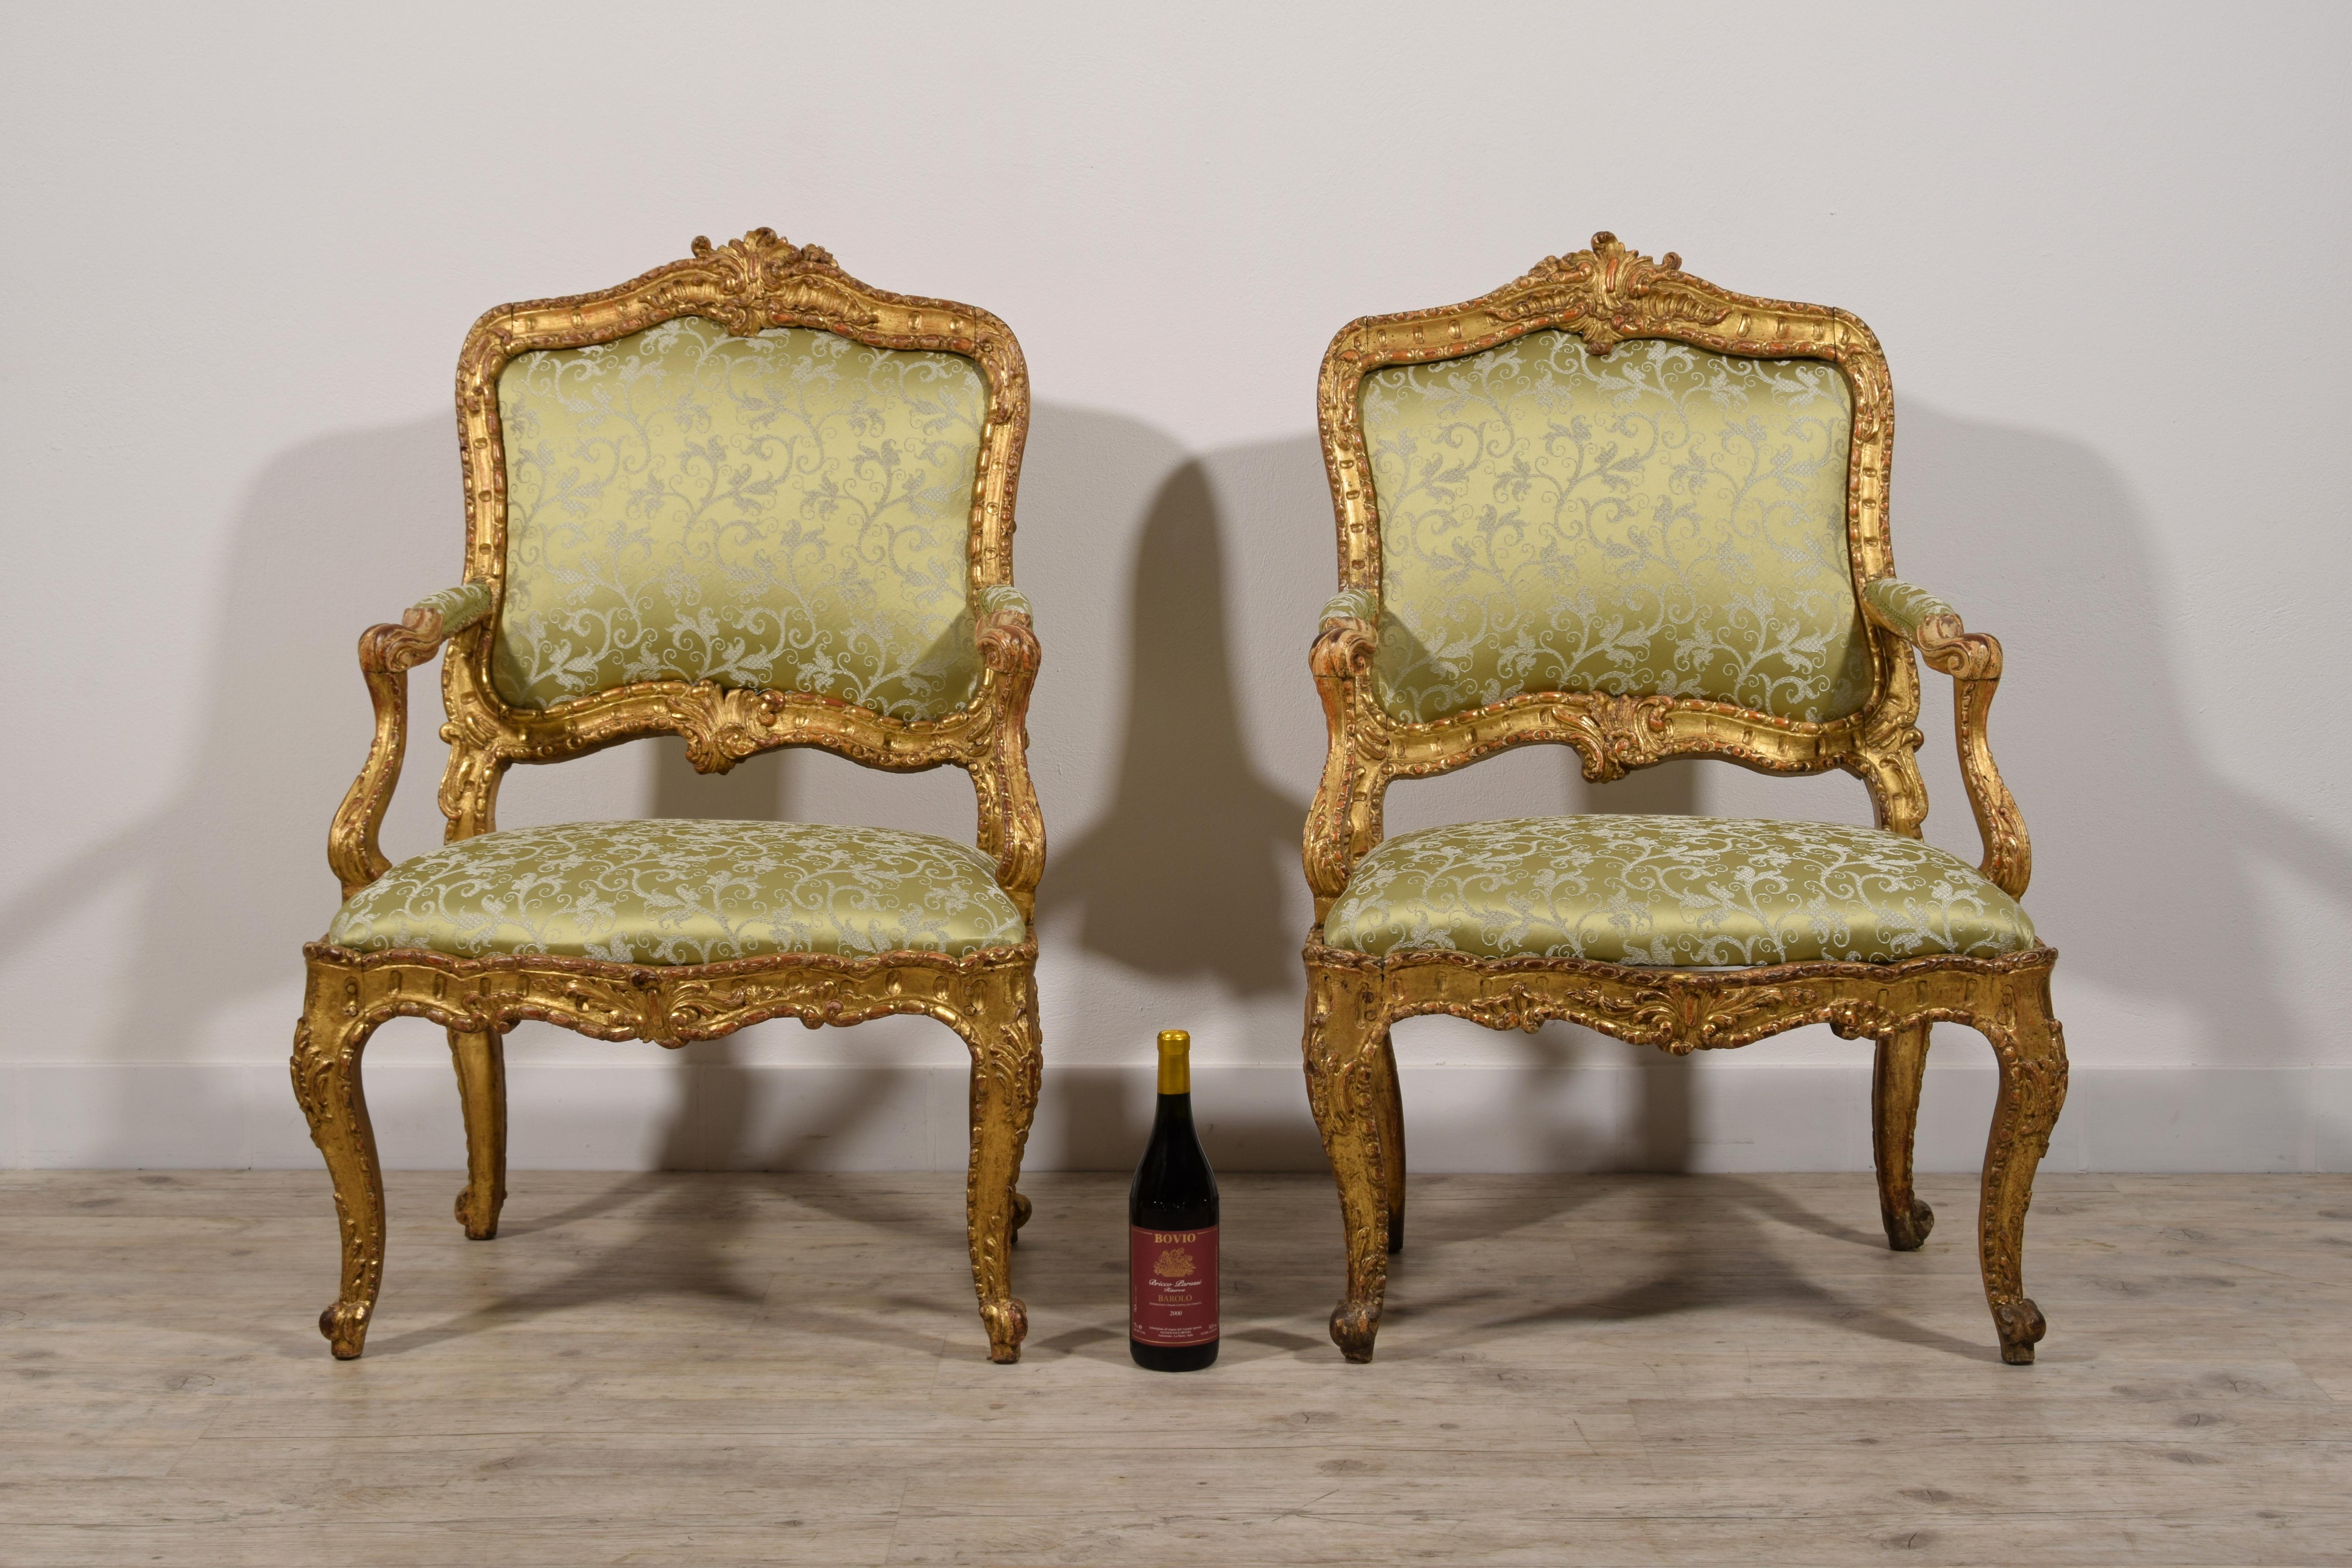 Paire de fauteuils italiens Louis XV en bois doré sculpté du XVIIIe siècle 

Cette élégante paire de fauteuils a été fabriquée à Turin, en Italie, vers le milieu du XVIIIe siècle, sous le règne de Louis XV.
Chaque fauteuil est en bois doré et